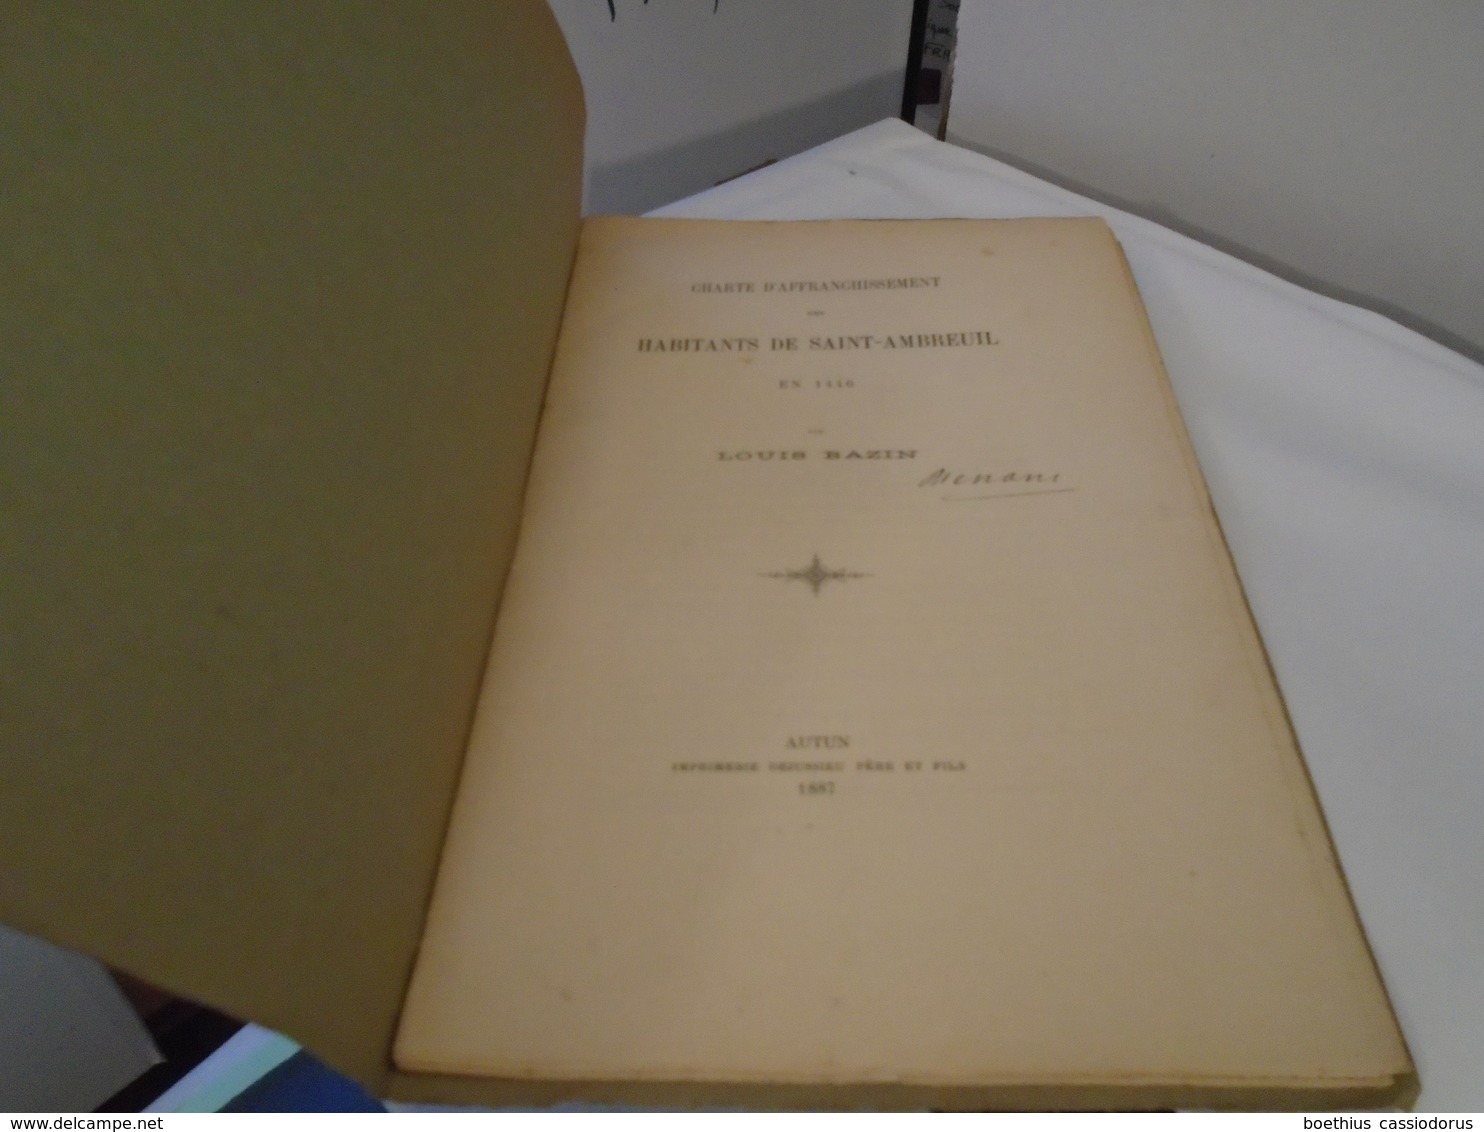 CHARTE D'AFFRANCHISSEMENT DES HABITANTS DE SAINT-AMBREUIL EN 1446  LOUIS BAZIN  1887 Plaquette Originale Pas Un Reprint - Bourgogne